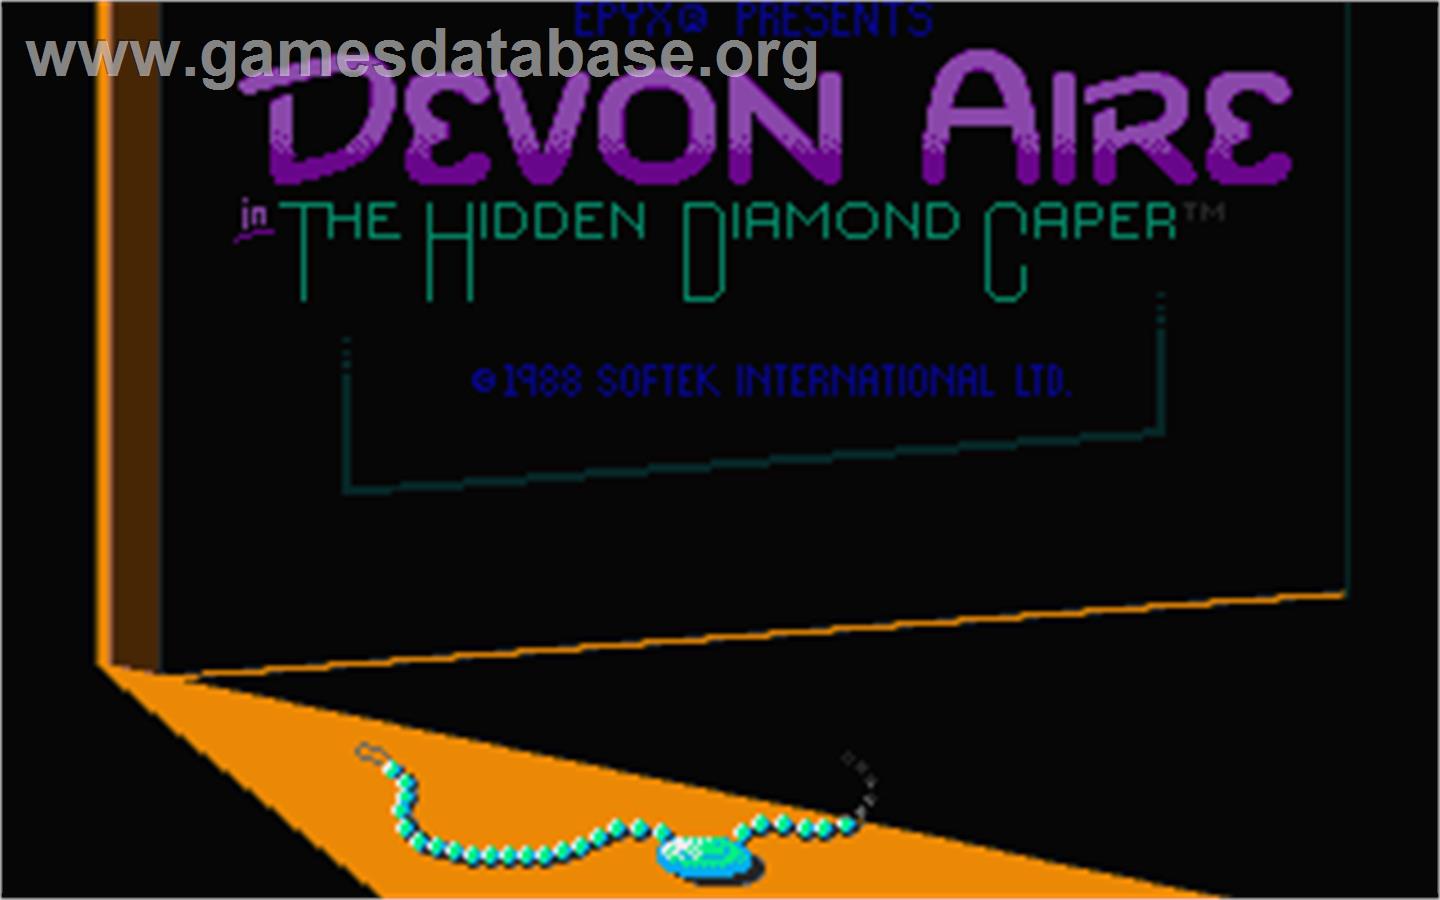 Devon Aire in the Hidden Diamond Caper - Atari ST - Artwork - Title Screen